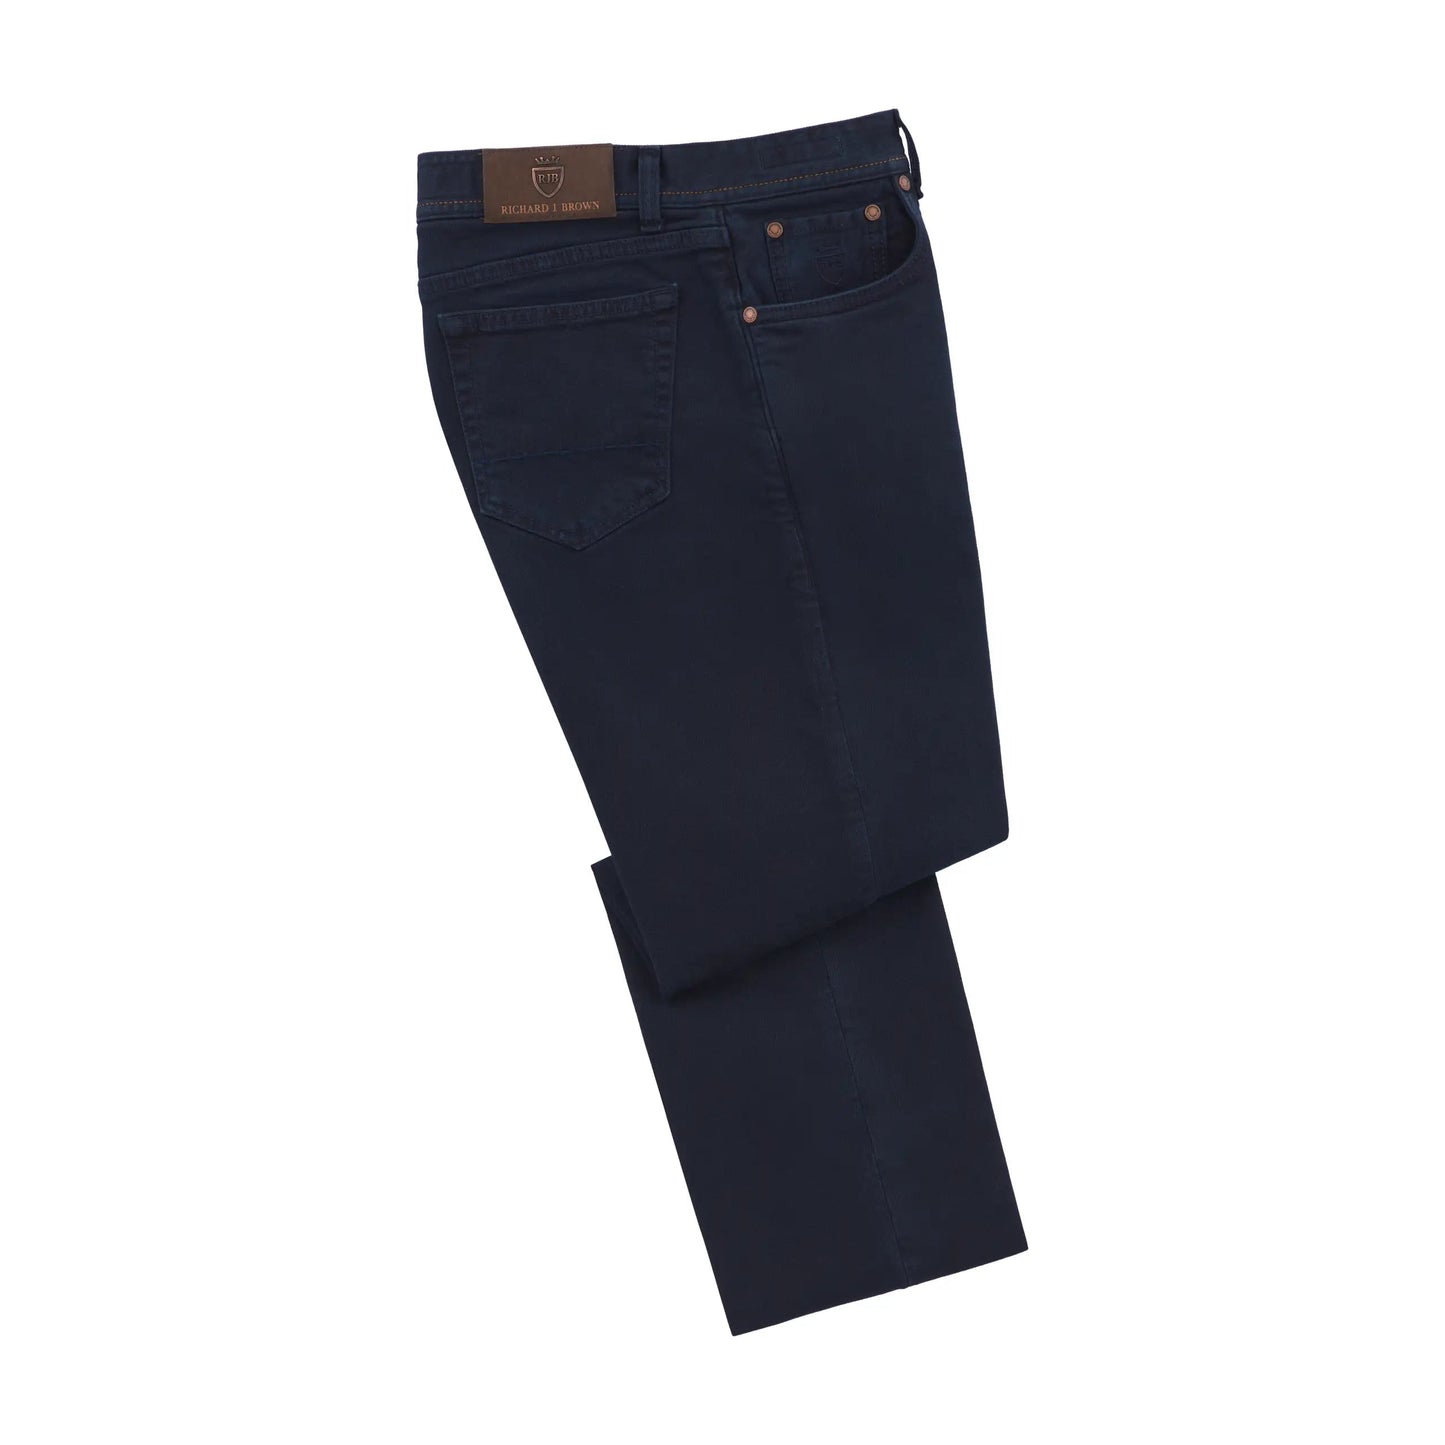 Richard J. Brown Stretch - Cotton Jeans in Dark Blue Denim - SARTALE